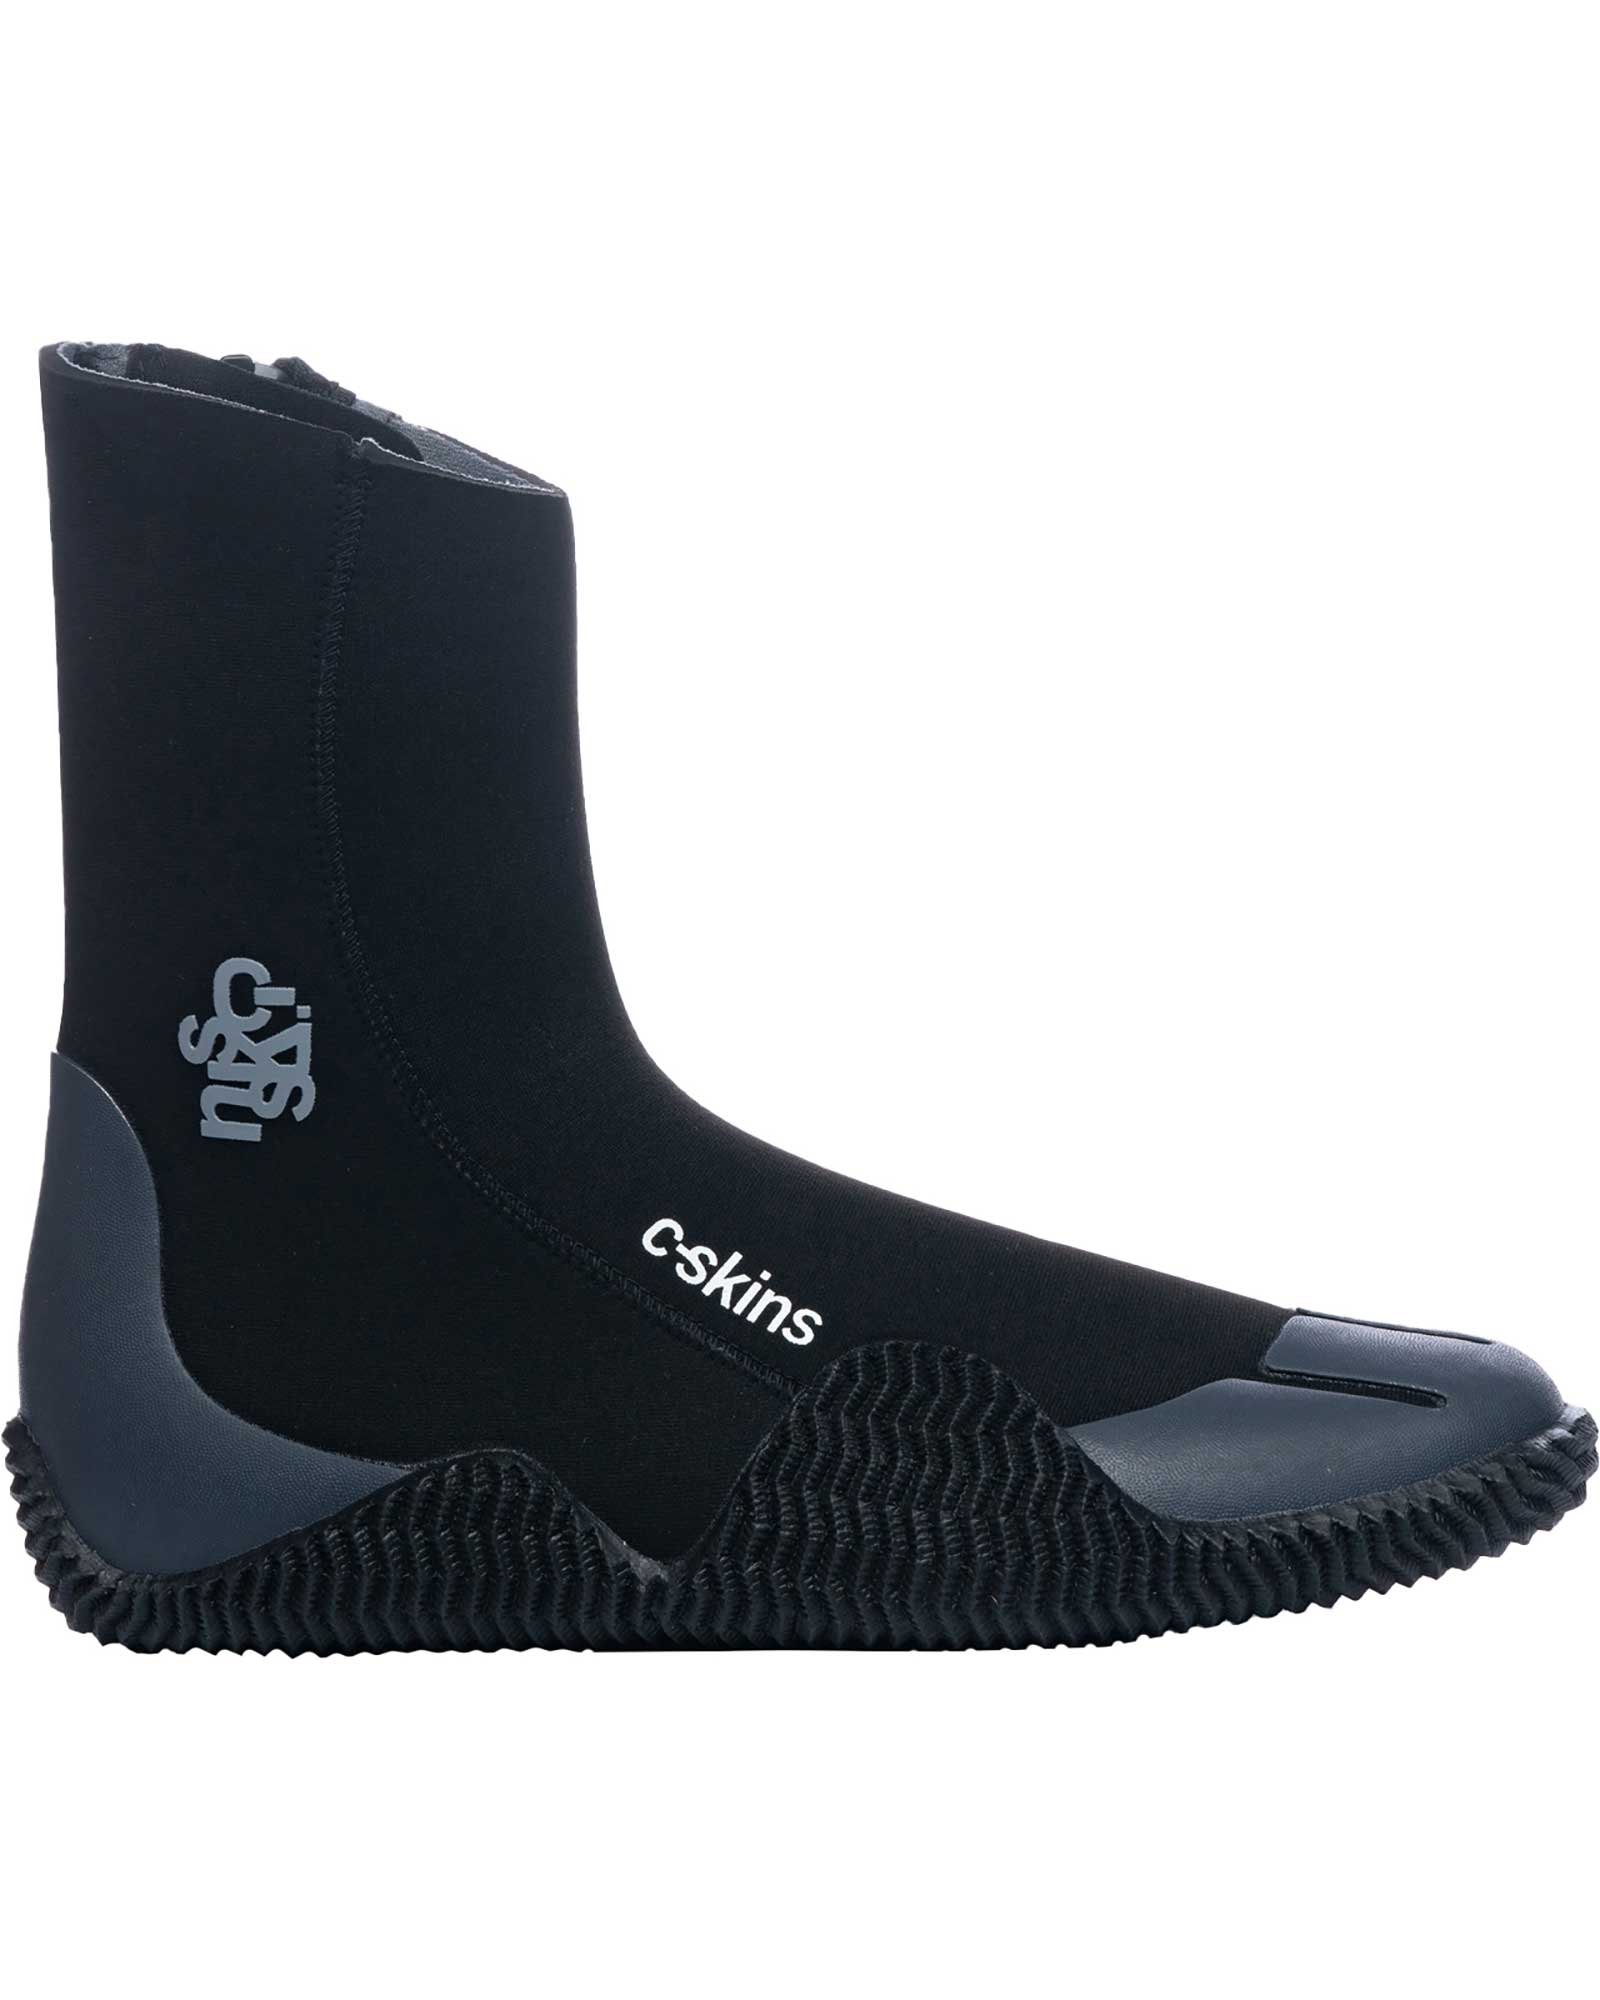 C Skins Legend 5mm Zipped Boots - Black/Charcoal UK 9